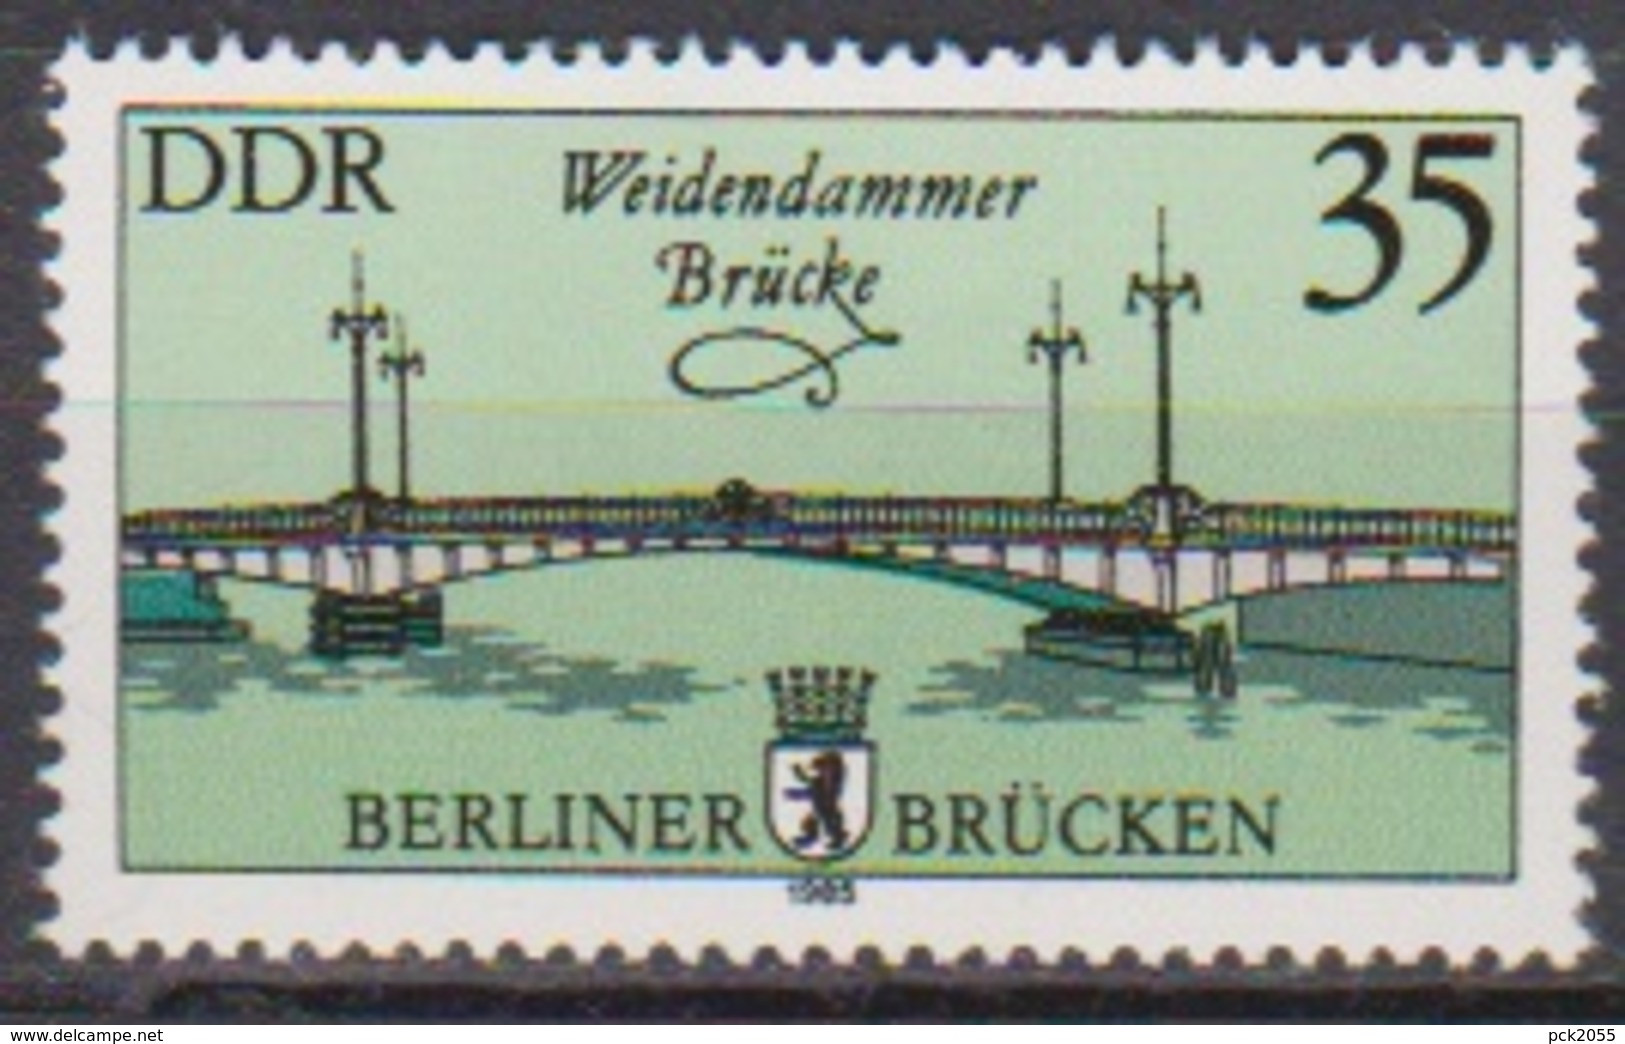 DDR 1985 MiNr.2974  ** Postfr. Historische Brücken In Berlin ( 8035 )günstige Verandkosten - Nuevos